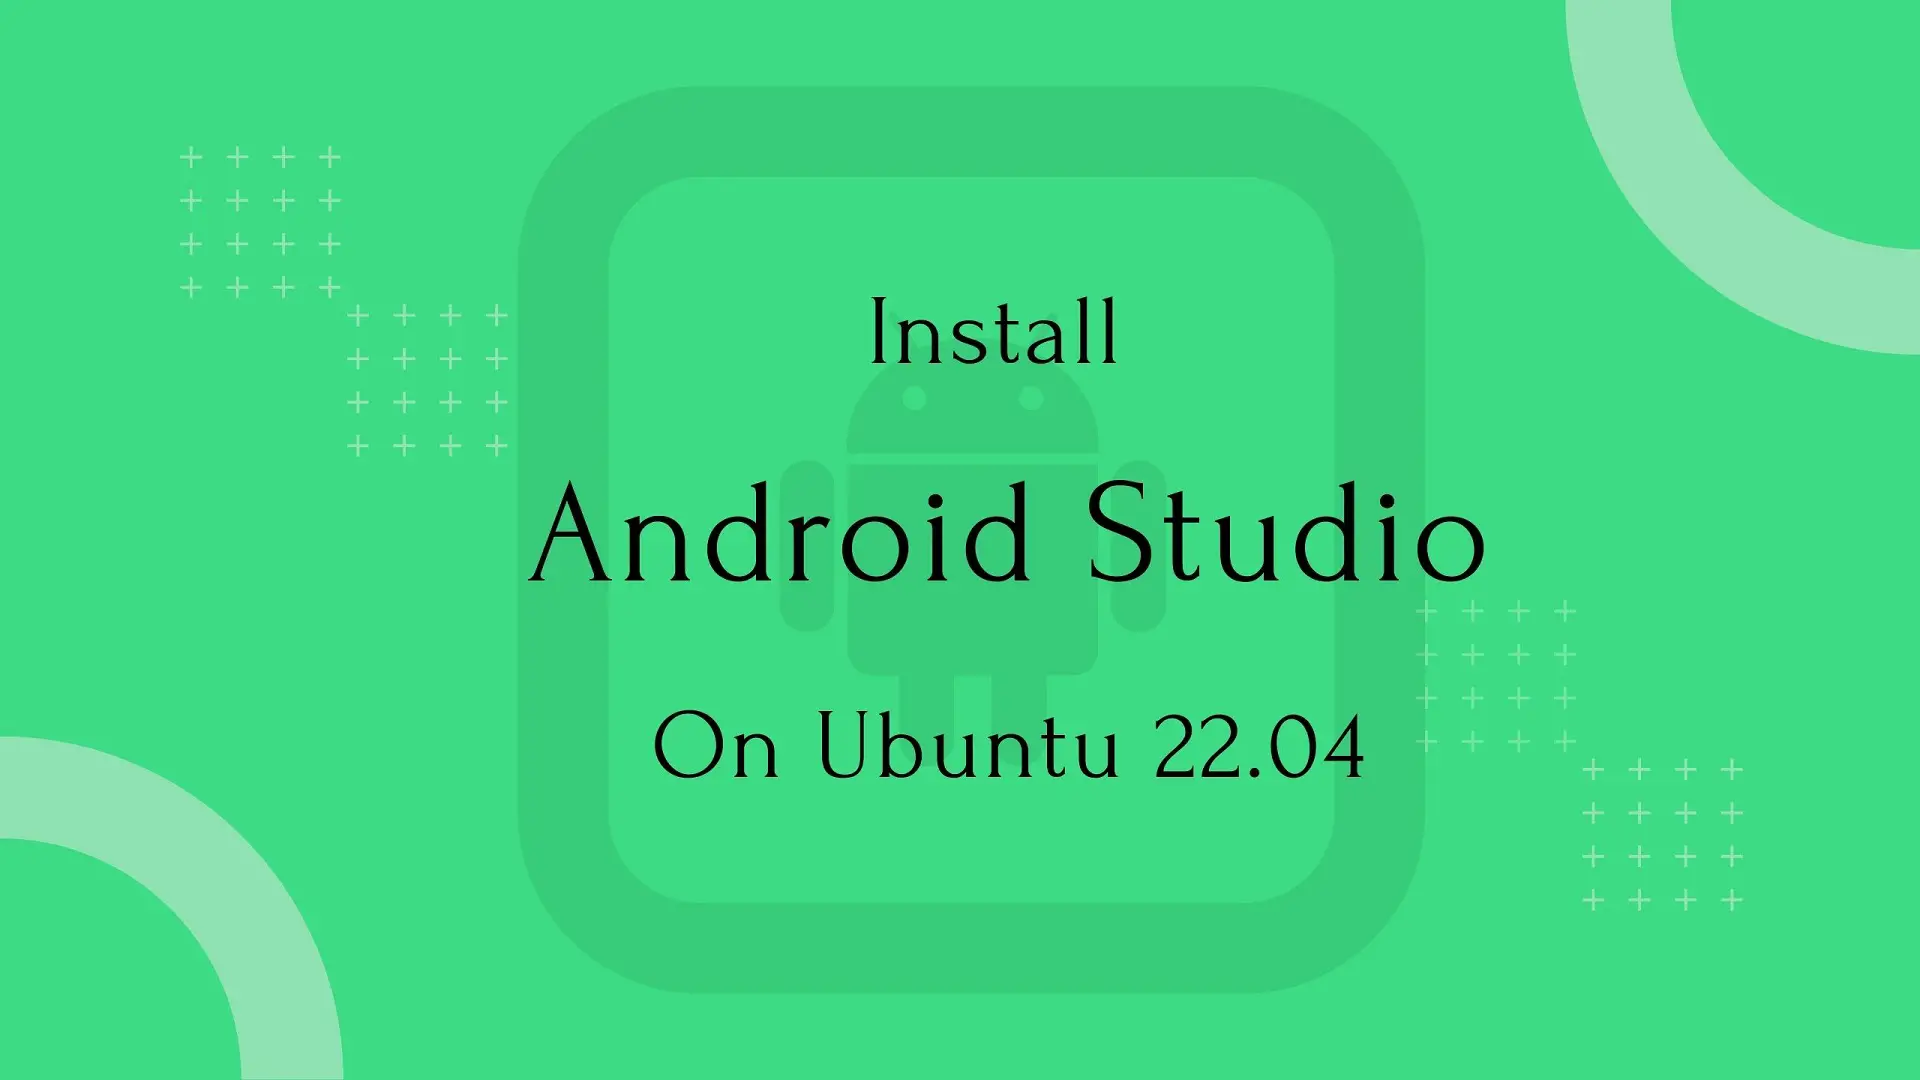 Install Android Studio on Ubuntu 22.04